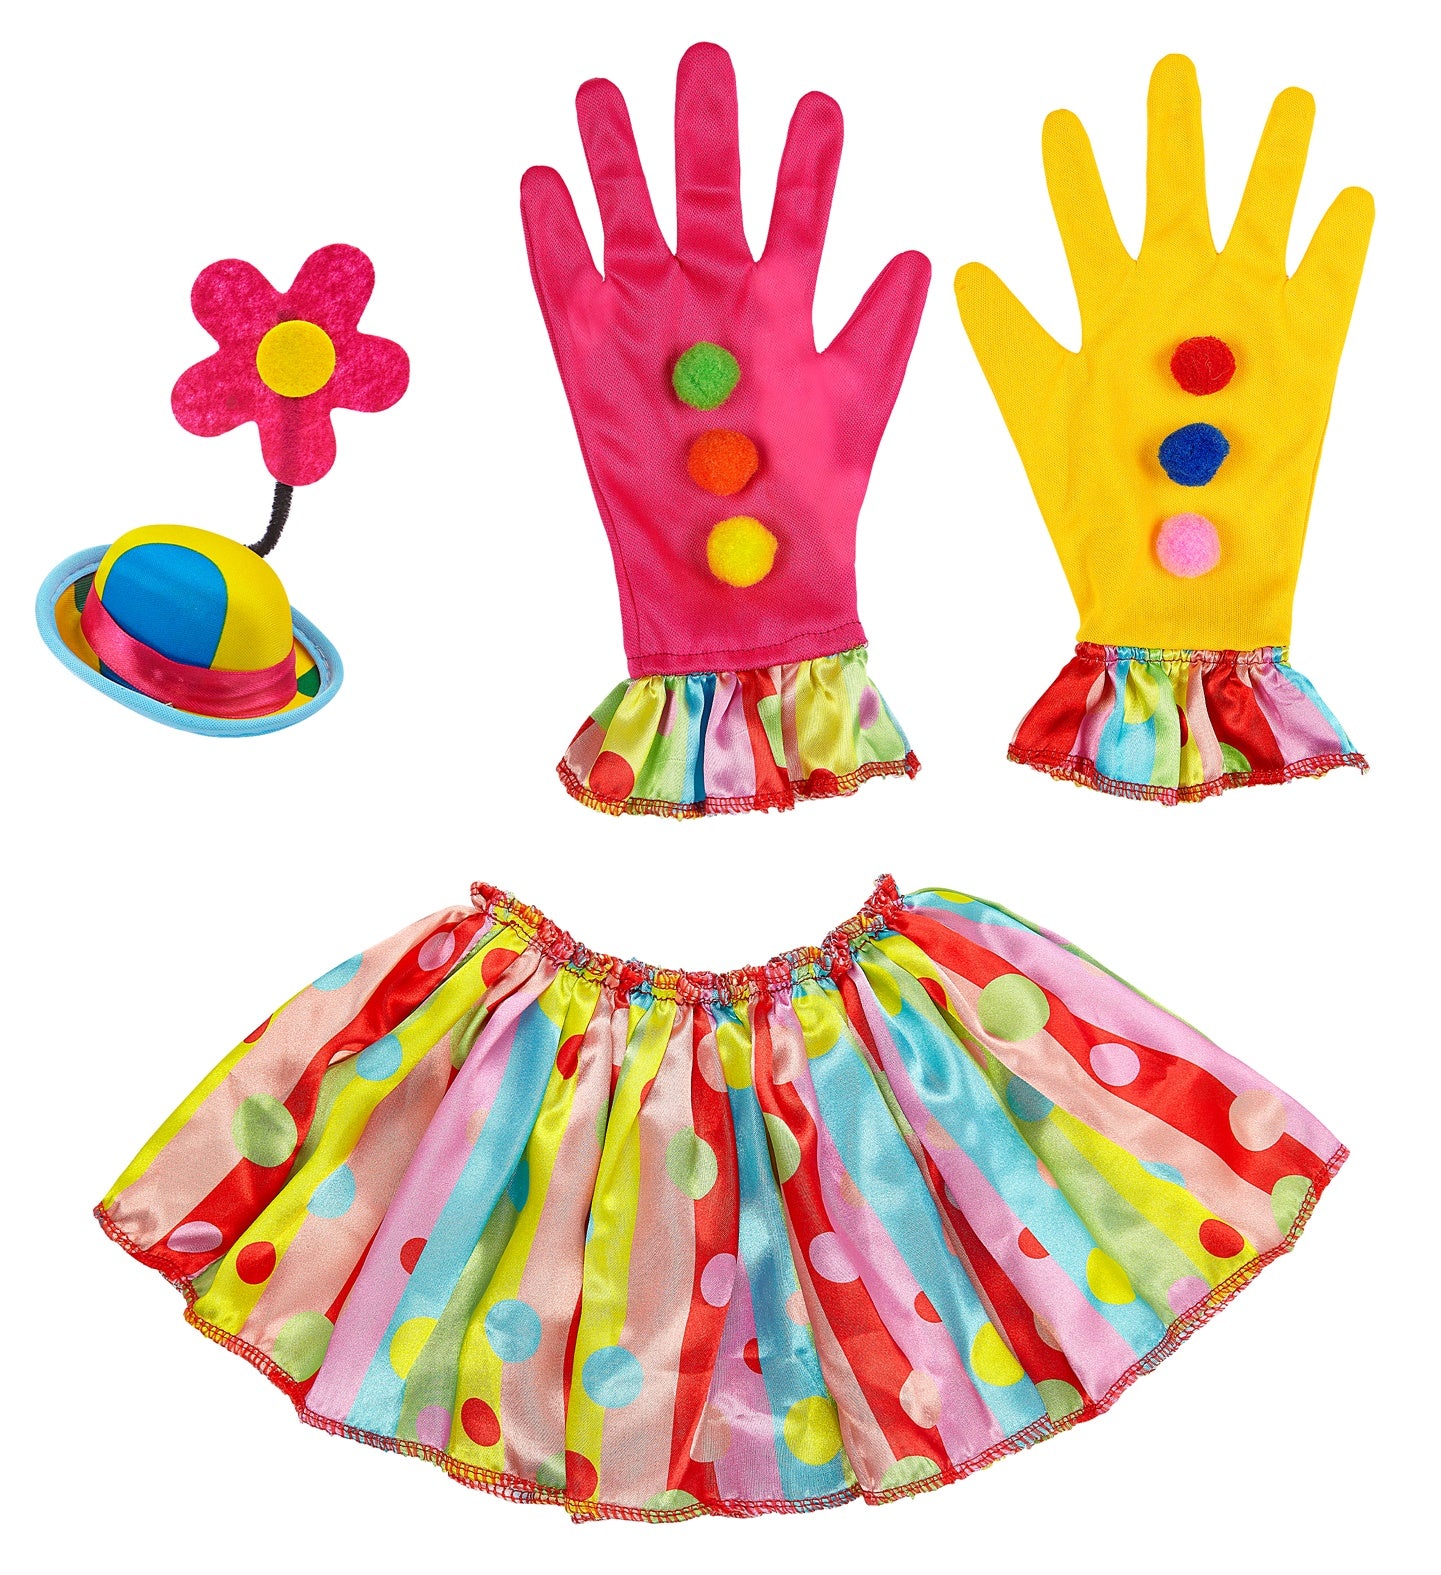 Clown costume Kit for women